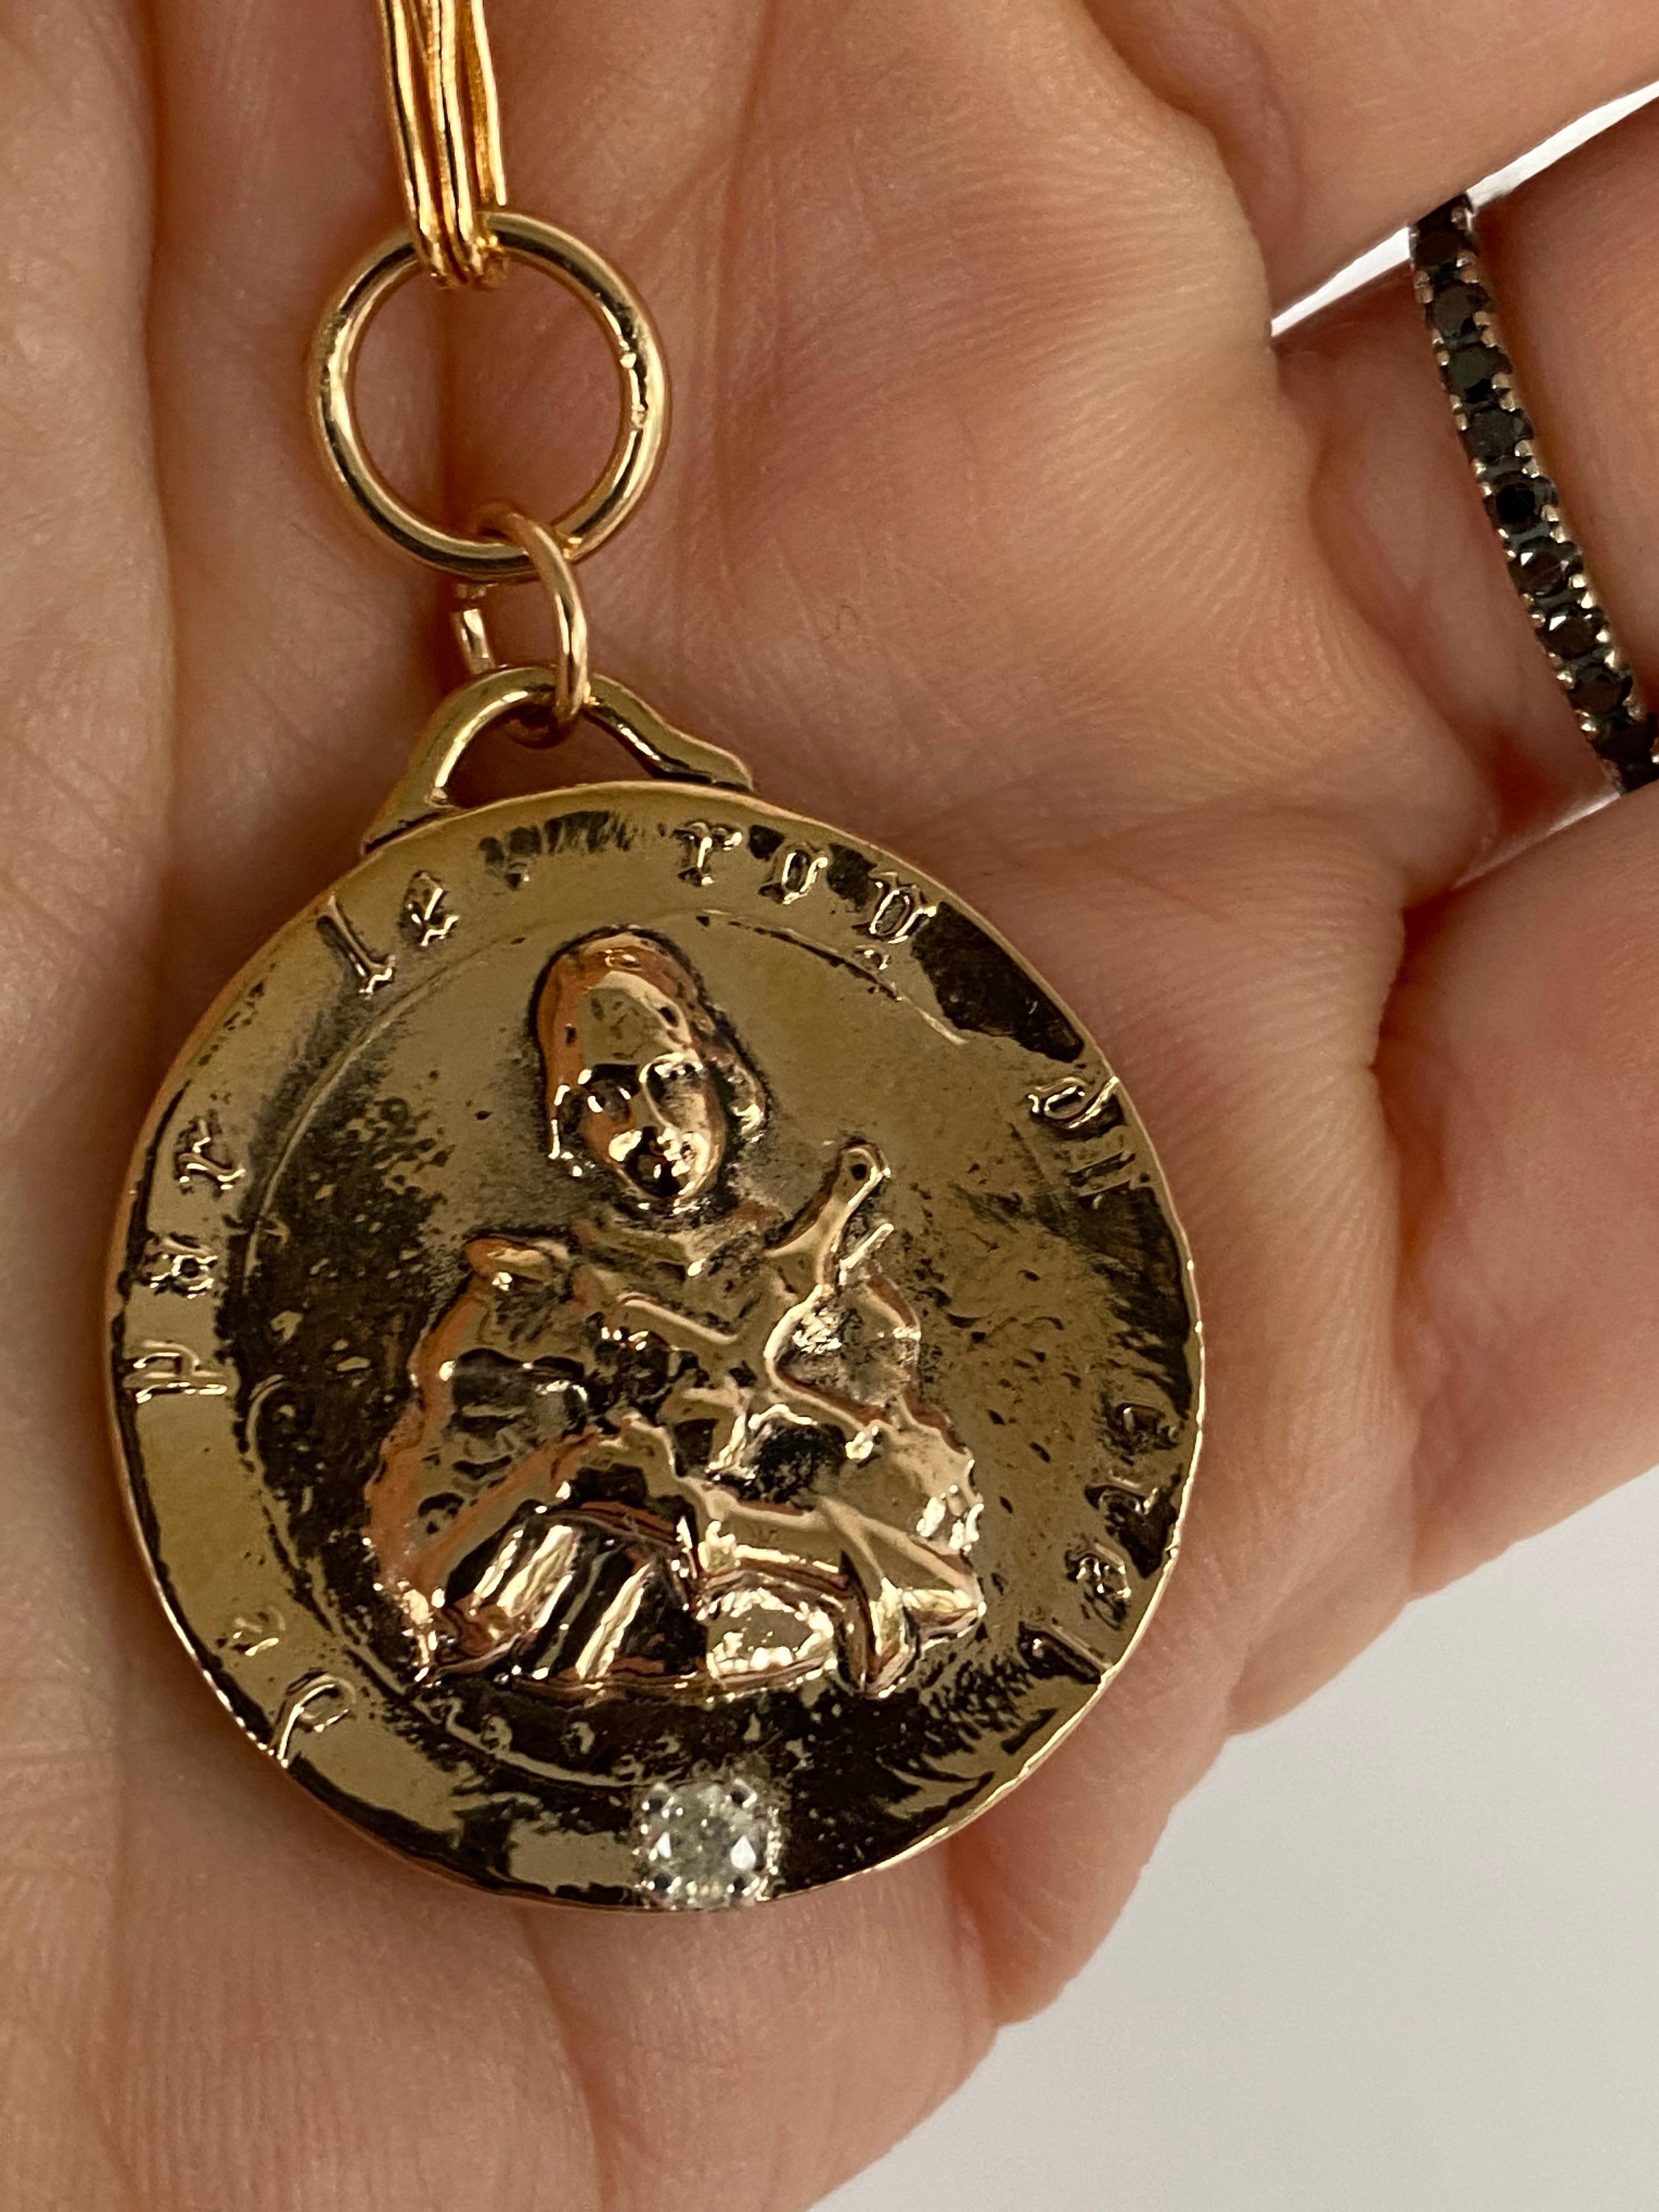 Collier à chaîne avec pendentif en forme de médaille de Jeanne d'Arc en diamant blanc par J DAUPHIN

Pièce exclusive avec pendentif Médaille Jeanne d'Arc Pièce ronde en bronze avec un diamant blanc et une chaîne en or. Le collier mesure 24